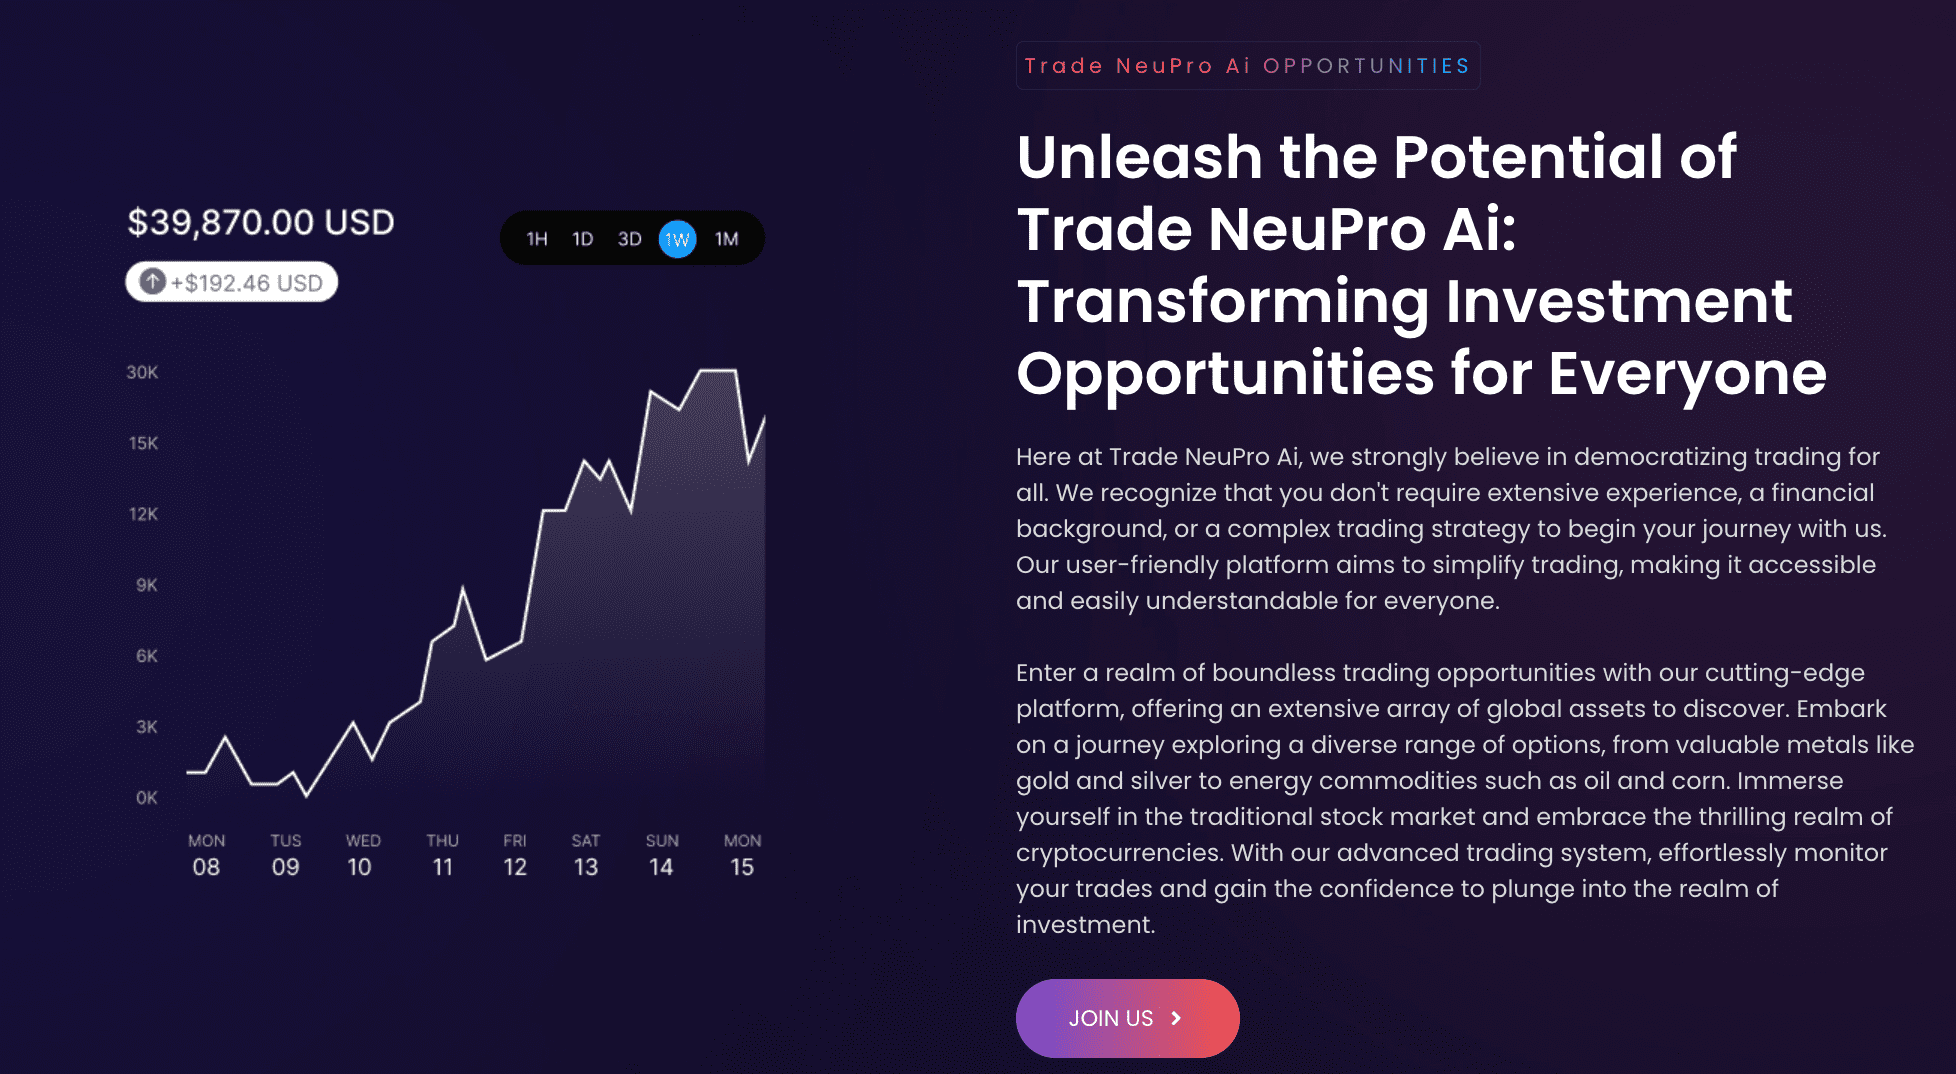 Trade NeuPro 4.0 (V 400) opportunités